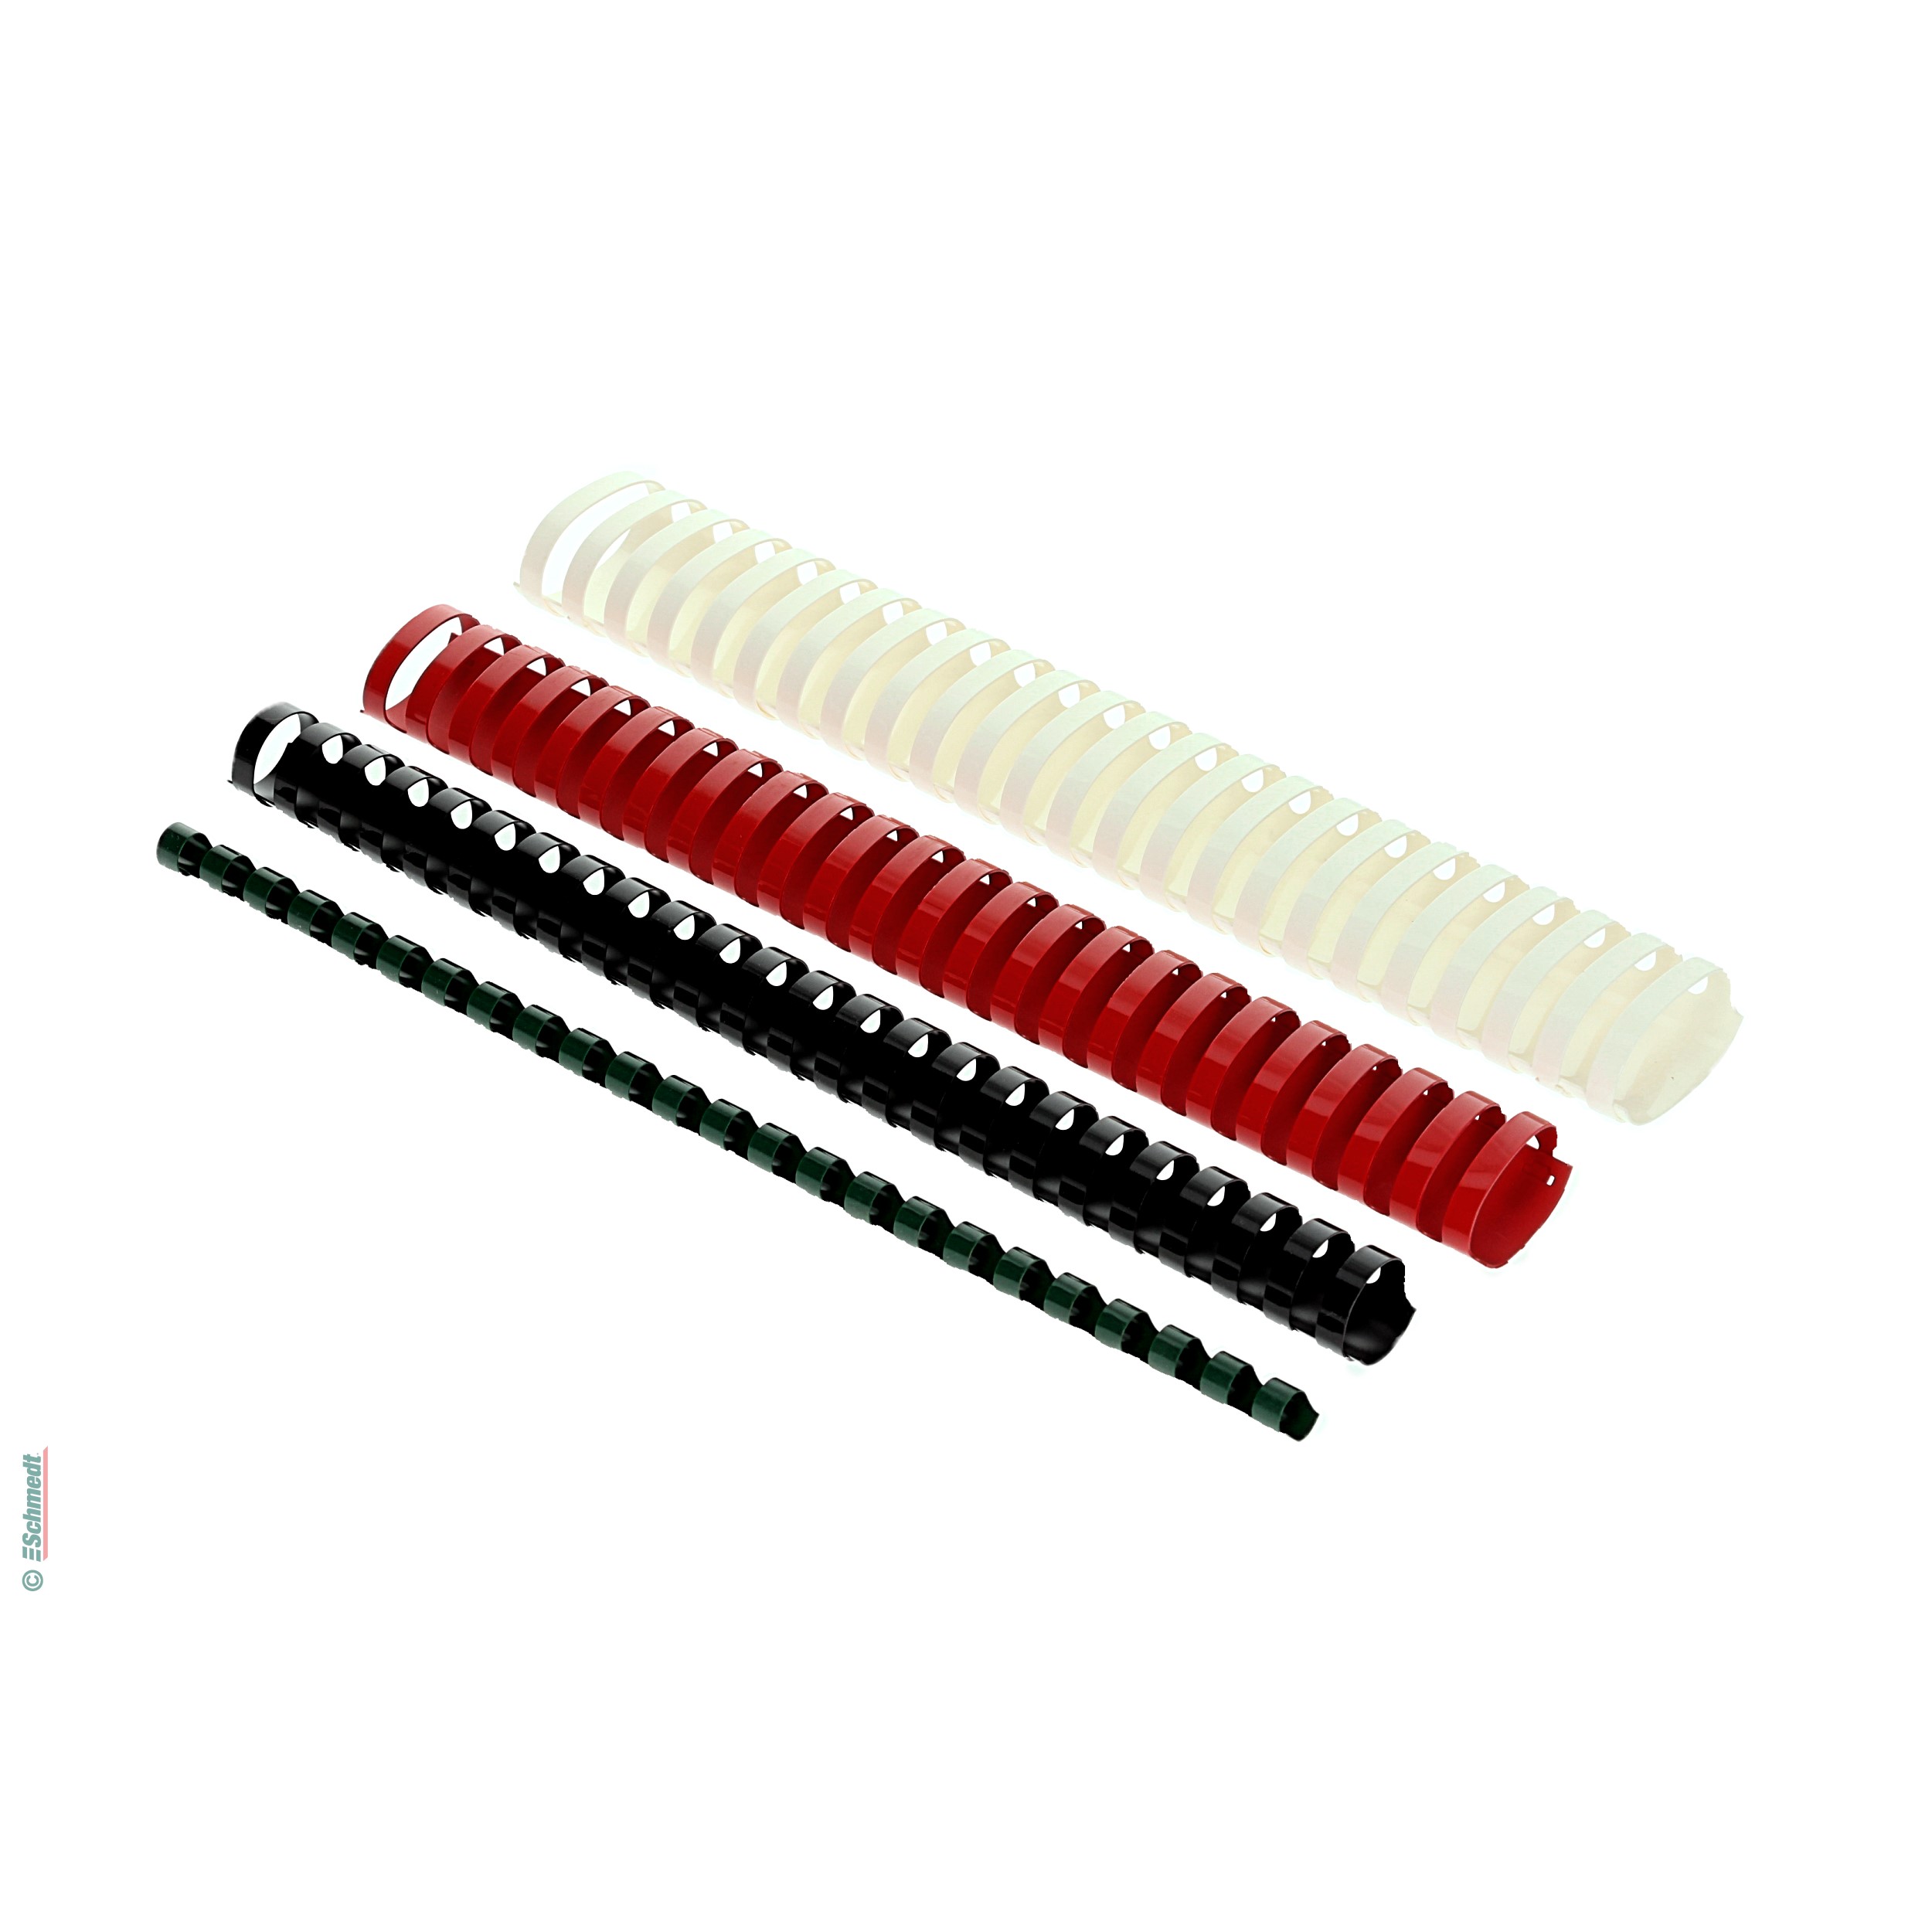 Canutillos de plástico - redondos - colorados - Paso EUROP - 24 anillas - para DIN A4...